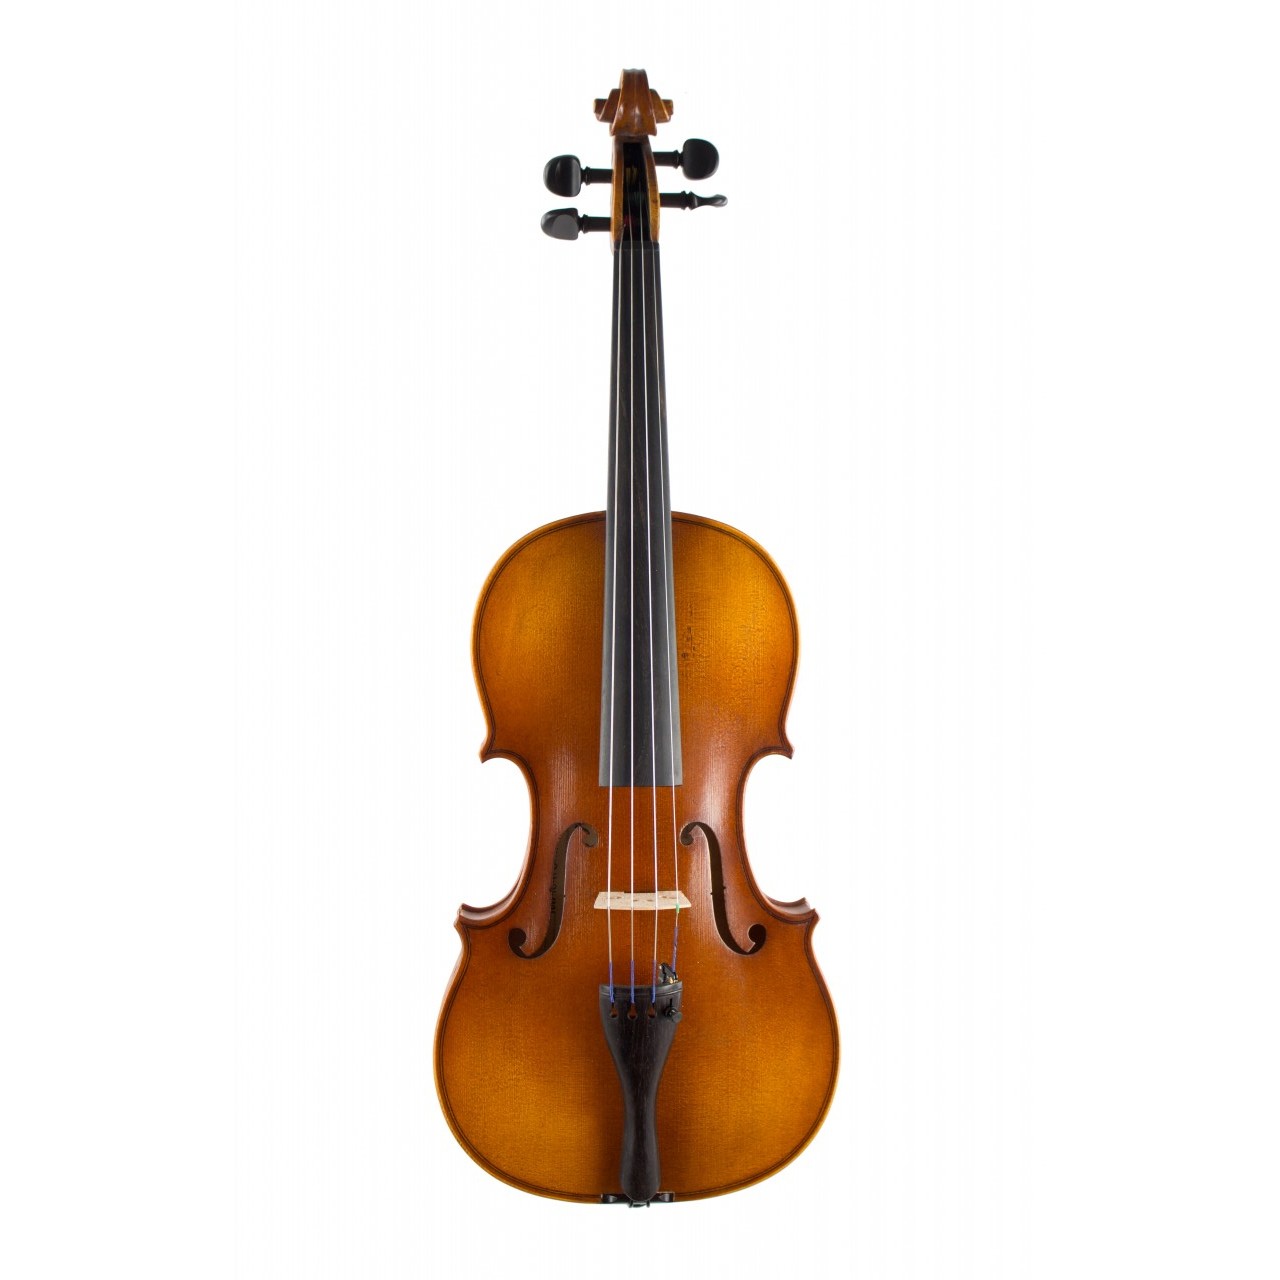 Höfner Violingarnitur H8 1/2 mit Koffer und Bogen